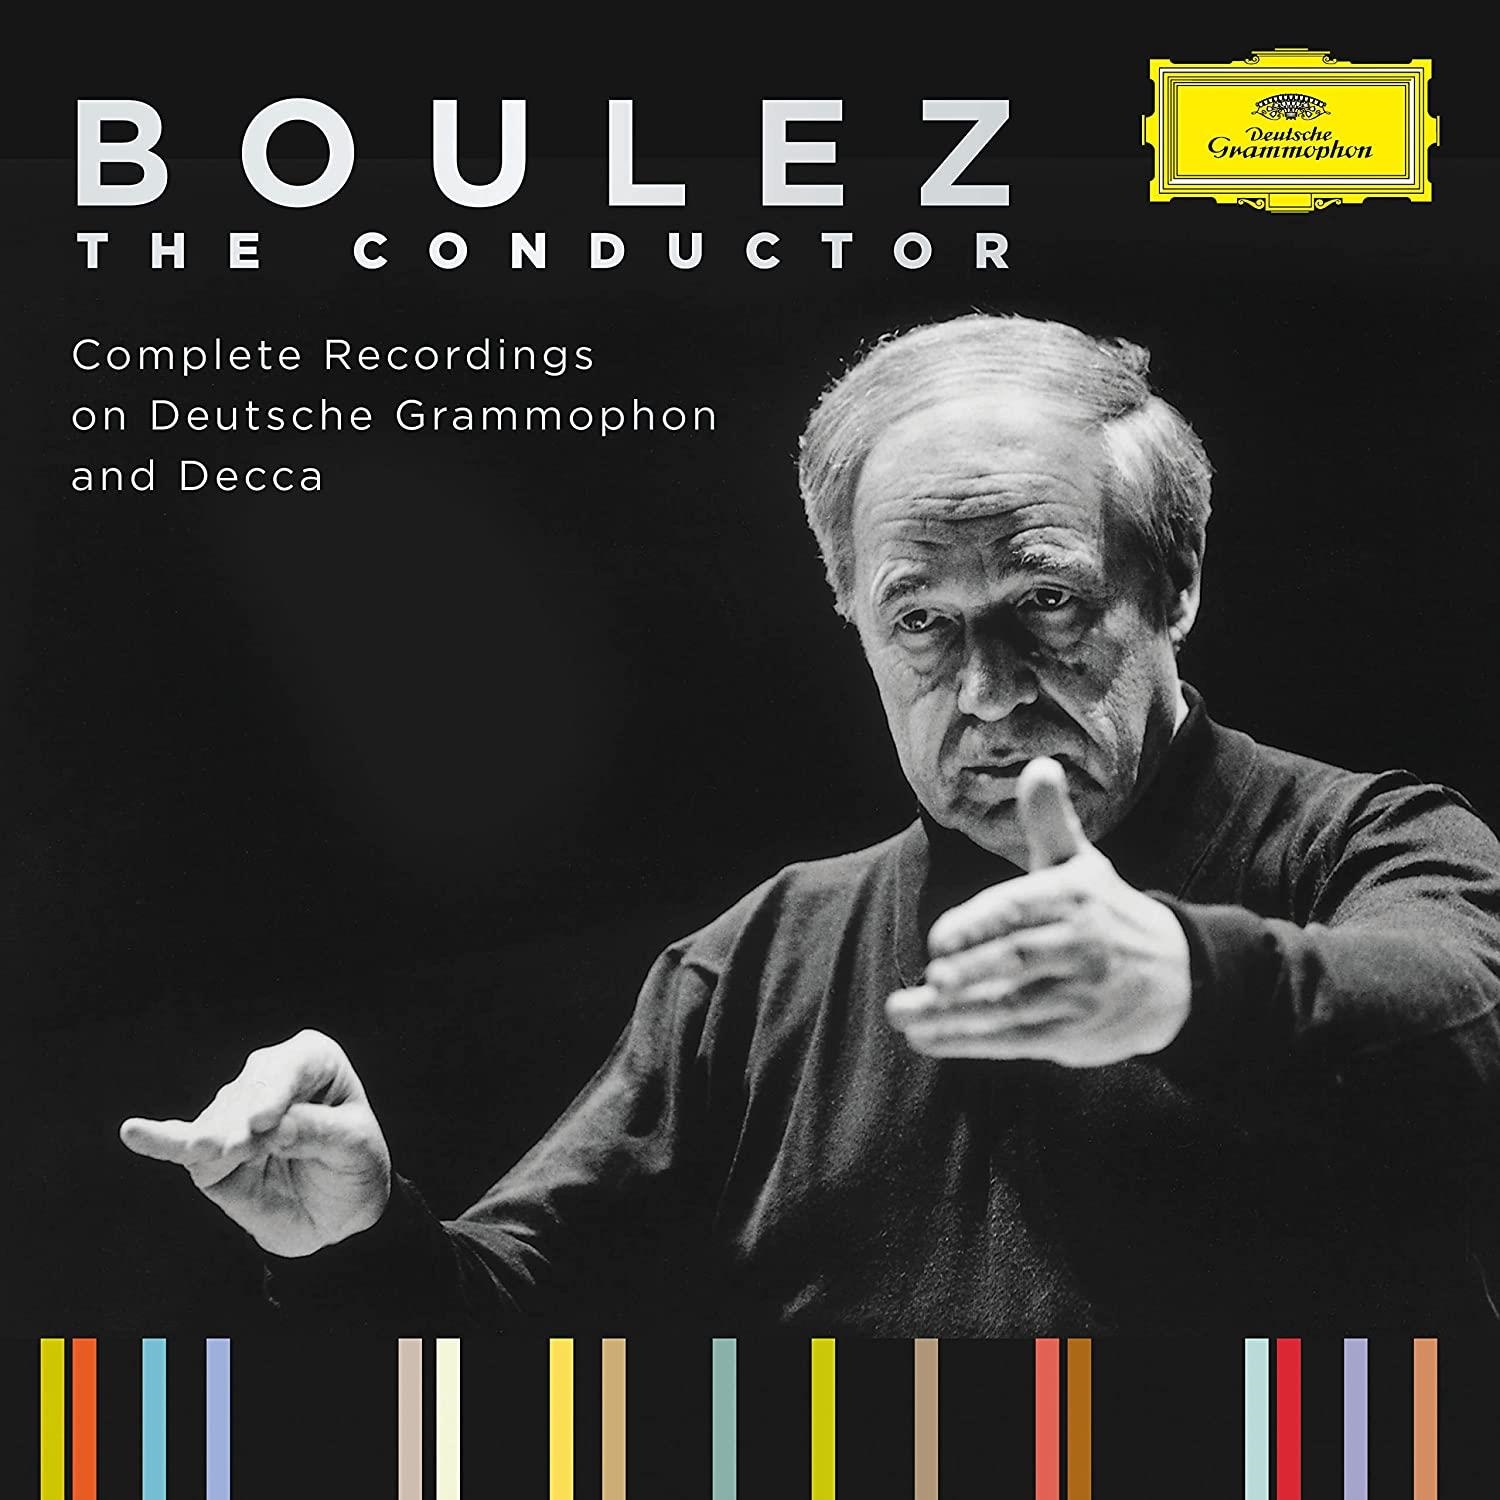 Audio Cd Pierre Boulez: The Conductor - Complete Recordings on Deutsche Grammophon And Decca (84 Cd+4 Blu-Ray) NUOVO SIGILLATO, EDIZIONE DEL 28/01/2022 PROSSIMA USCITA DISPO ALLA DATA DI USCITA, SU PRENOTAZIONE